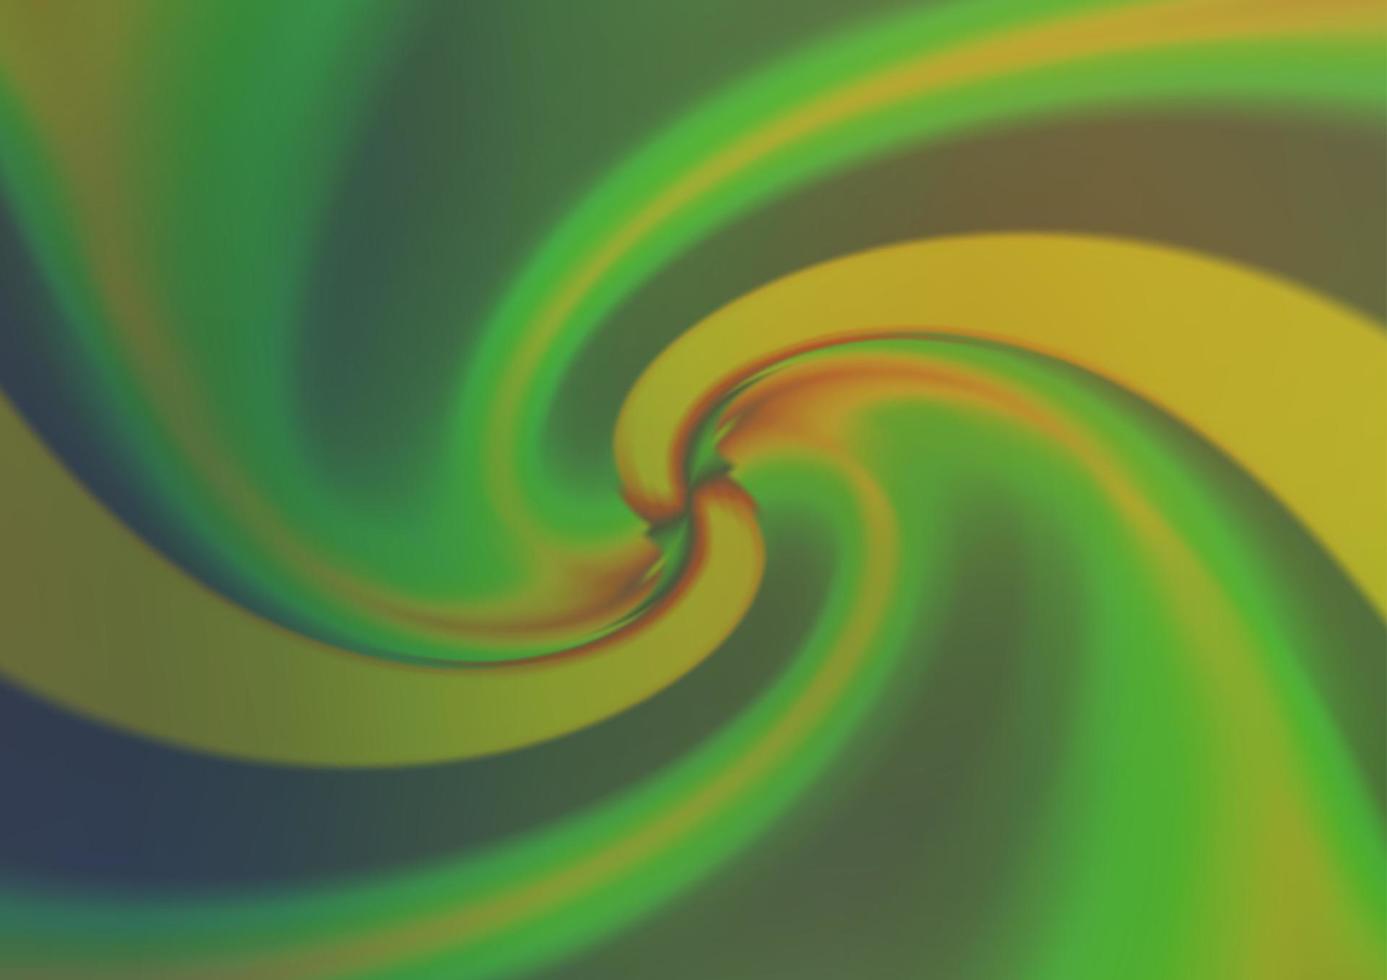 ljusgrön, gul vektor suddig glans abstrakt bakgrund.